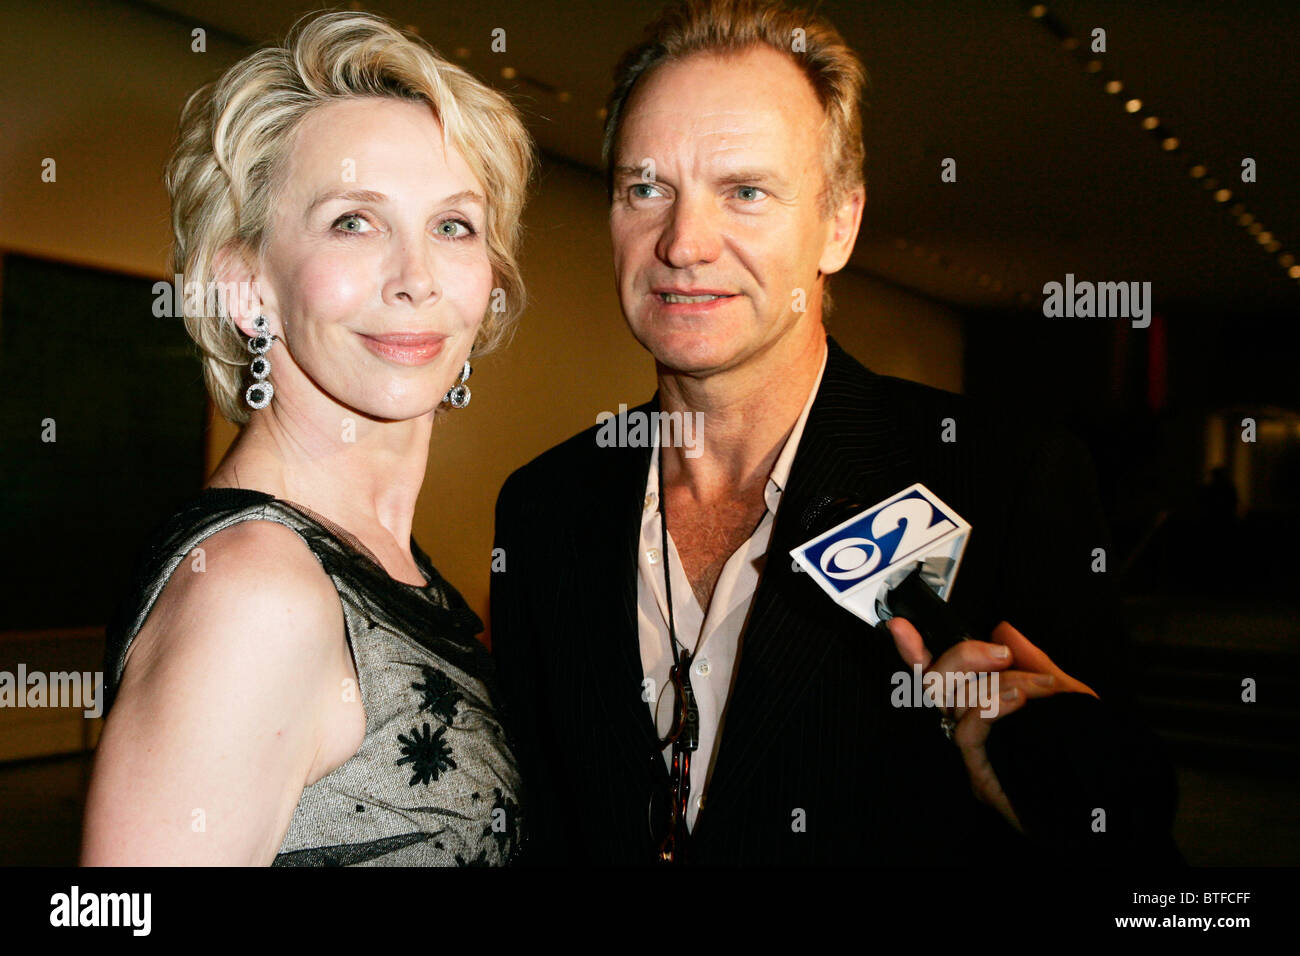 La estrella del pop Sting y su esposa Trudie Styler entrevistado en el Museo de Arte Moderno (MOMA), Nueva York, EE.UU. Foto de stock